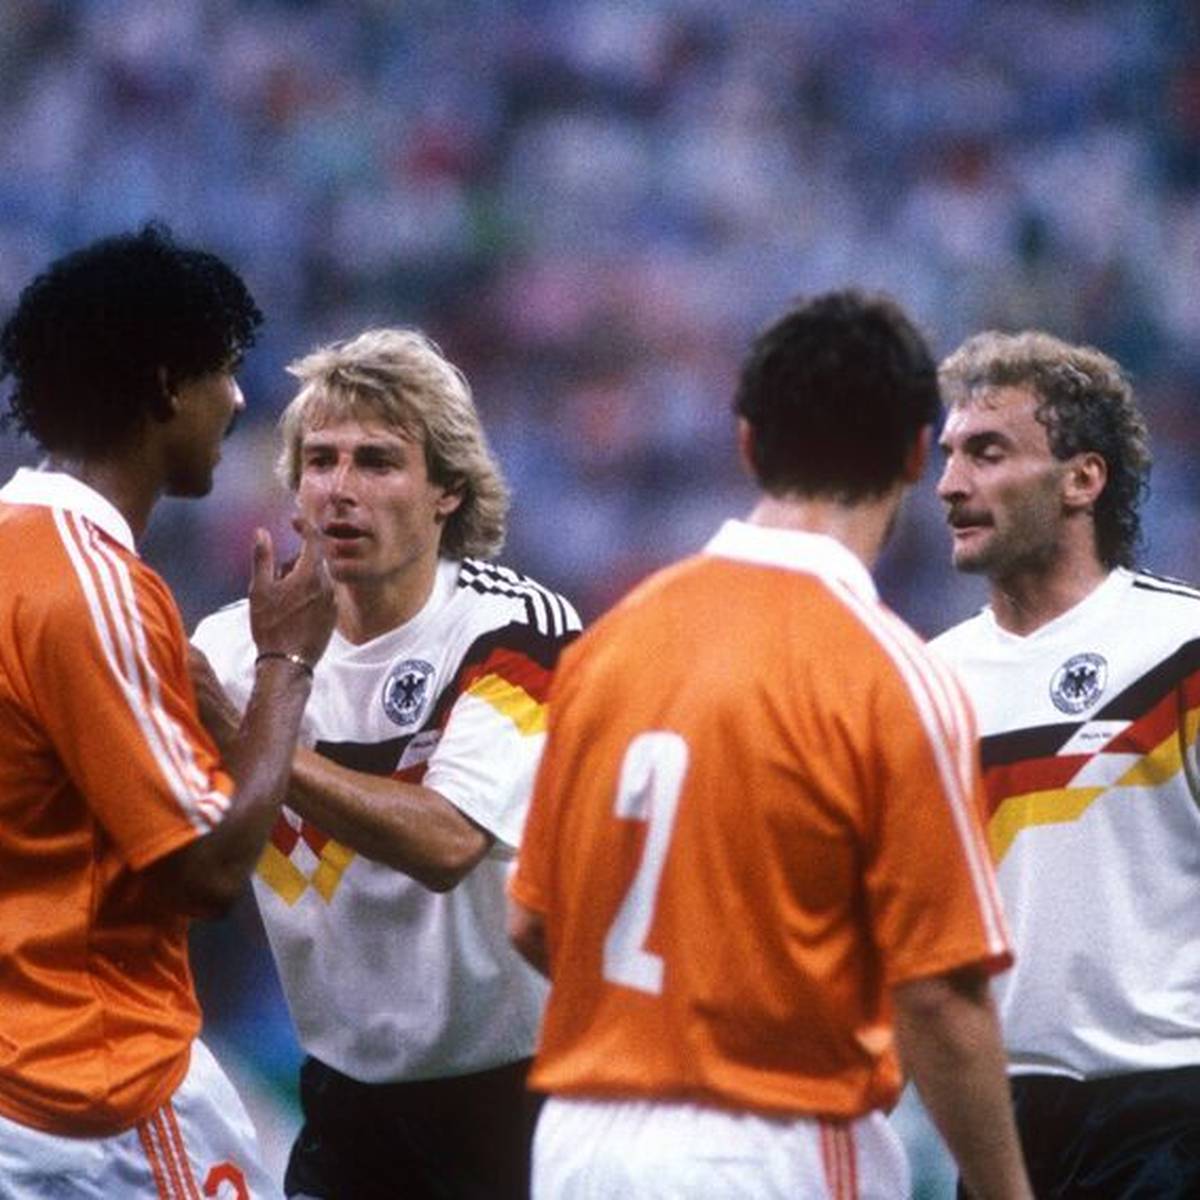 Frank Rijkaard, der an diesem Freitag 60 Jahre alt wird, verursachte bei der WM 1990 gegen Rudi Völler die Mutter aller Spuck-Eklats. Eine Entschuldigung folgte, sogar eine Versöhnung mit Werbespot.